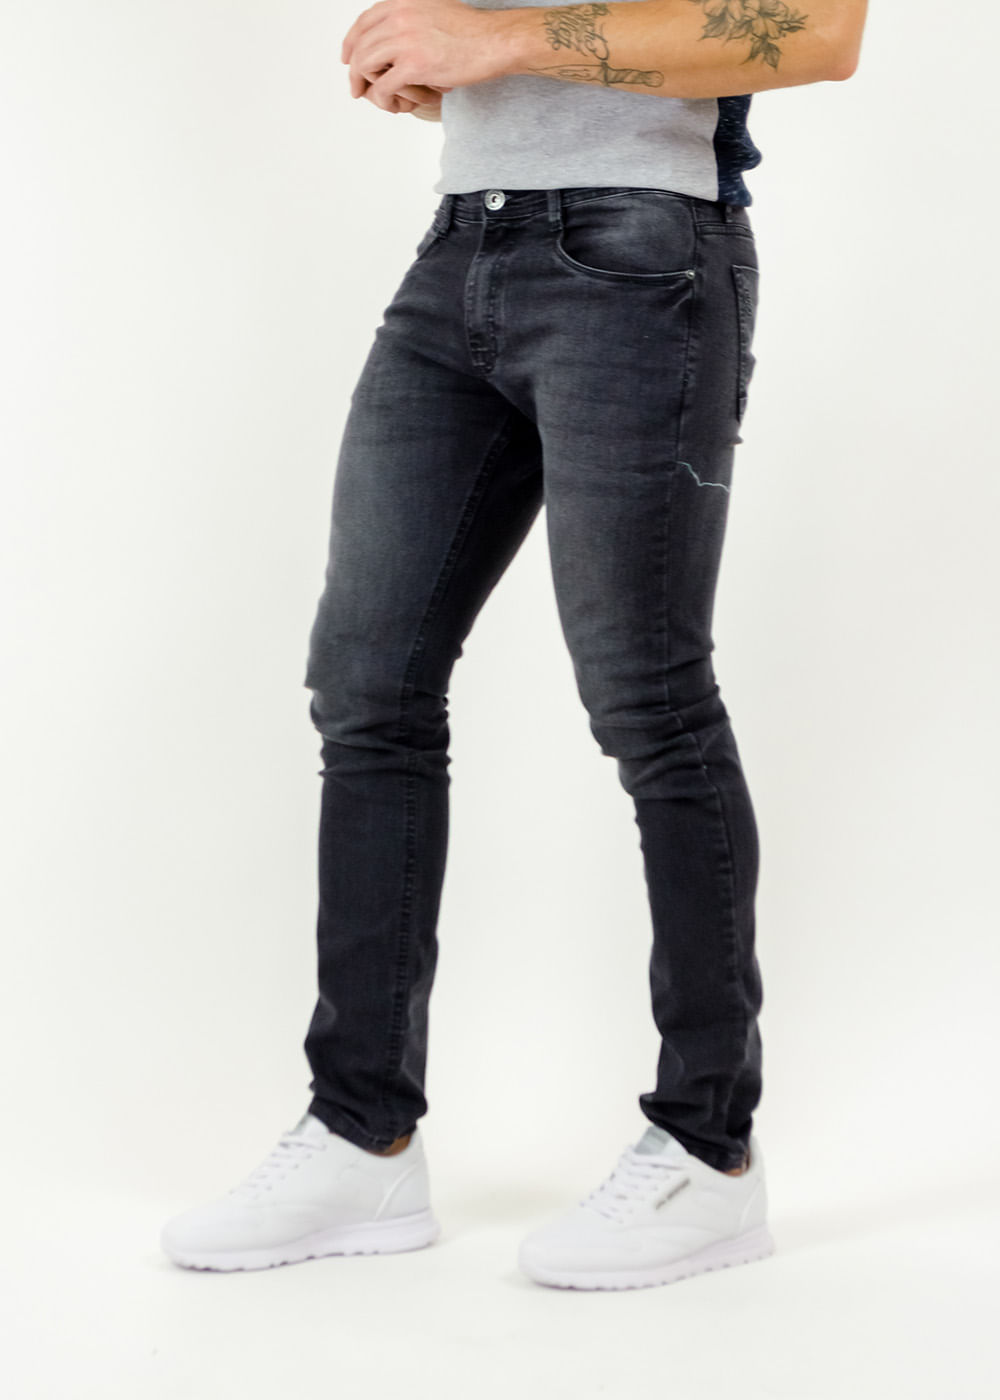 jeans com preto